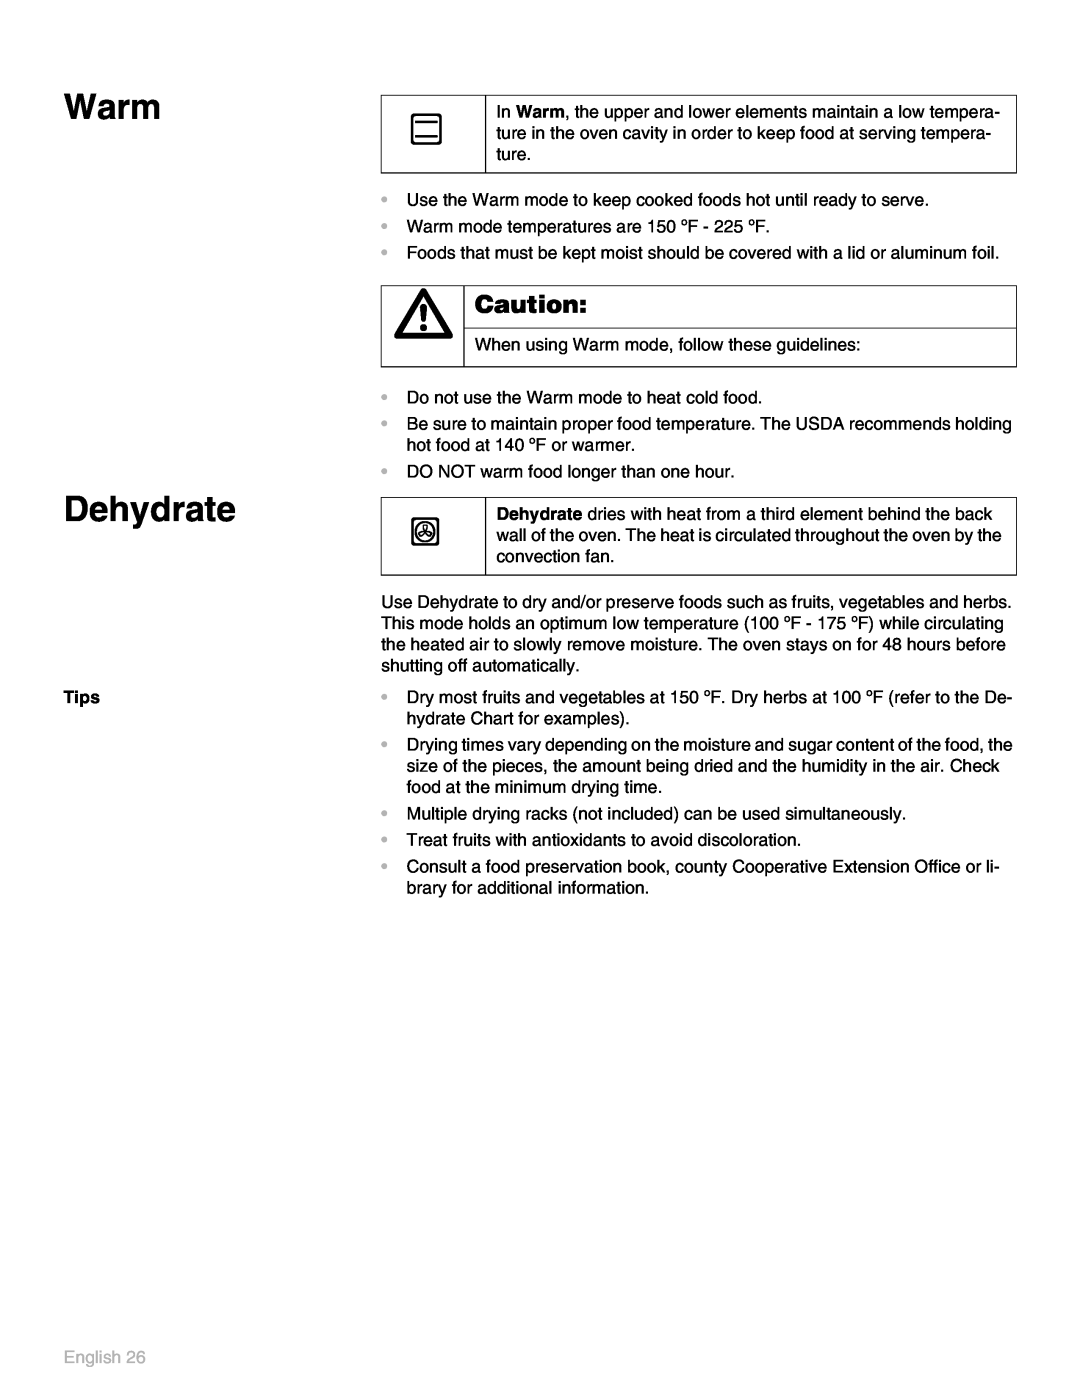 Thermador POD302 manual Warm Dehydrate, English 